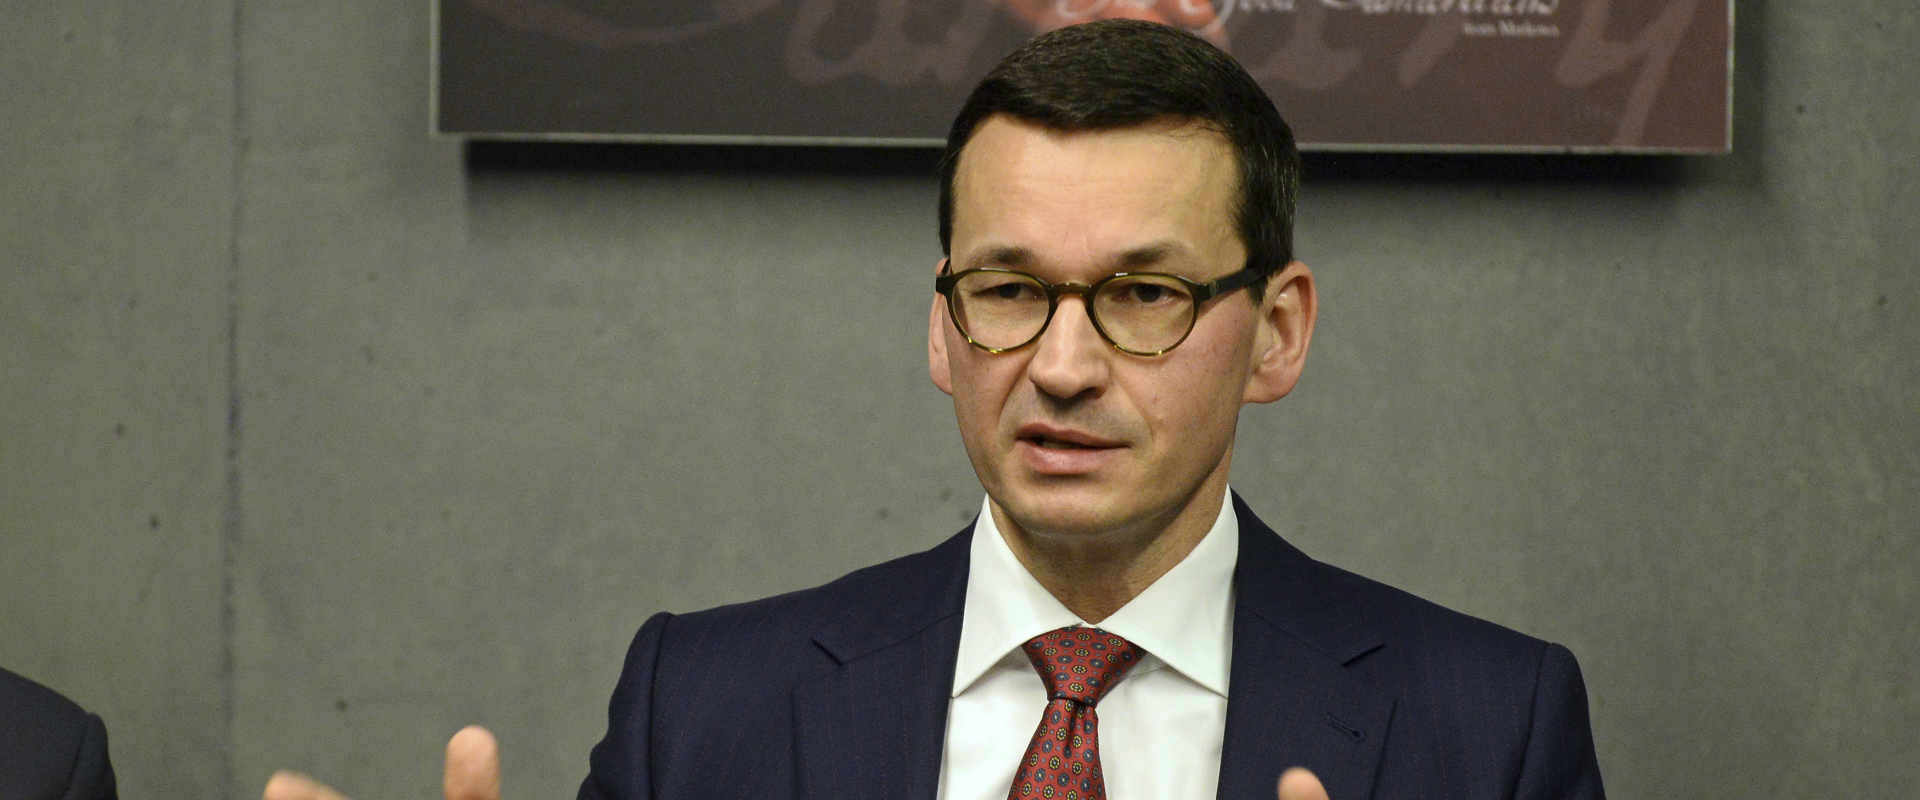 ראש ממשלת פולין מתיאוש מורבייצקי